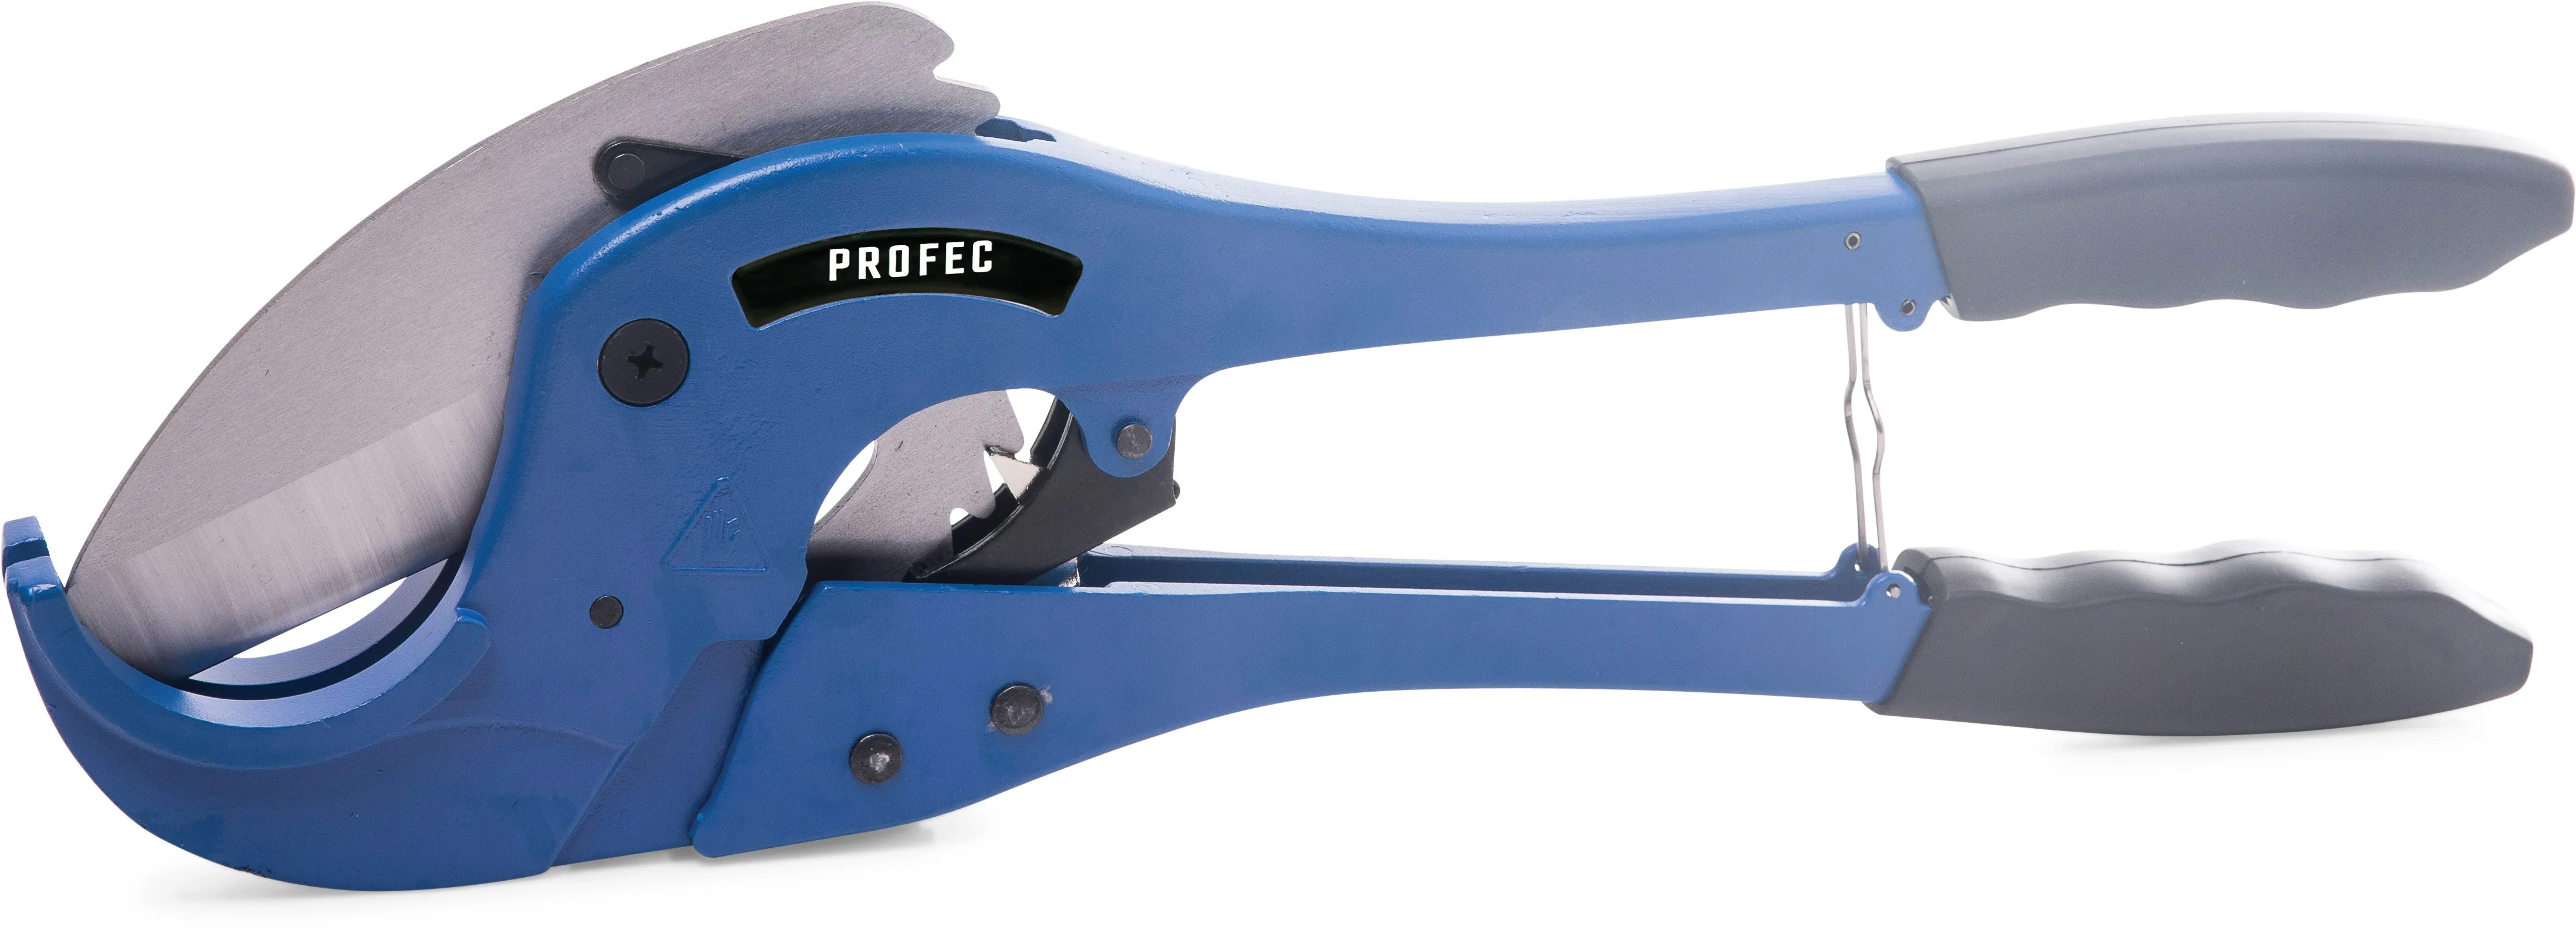 Profec Pipe cutter 20-75 mm blue